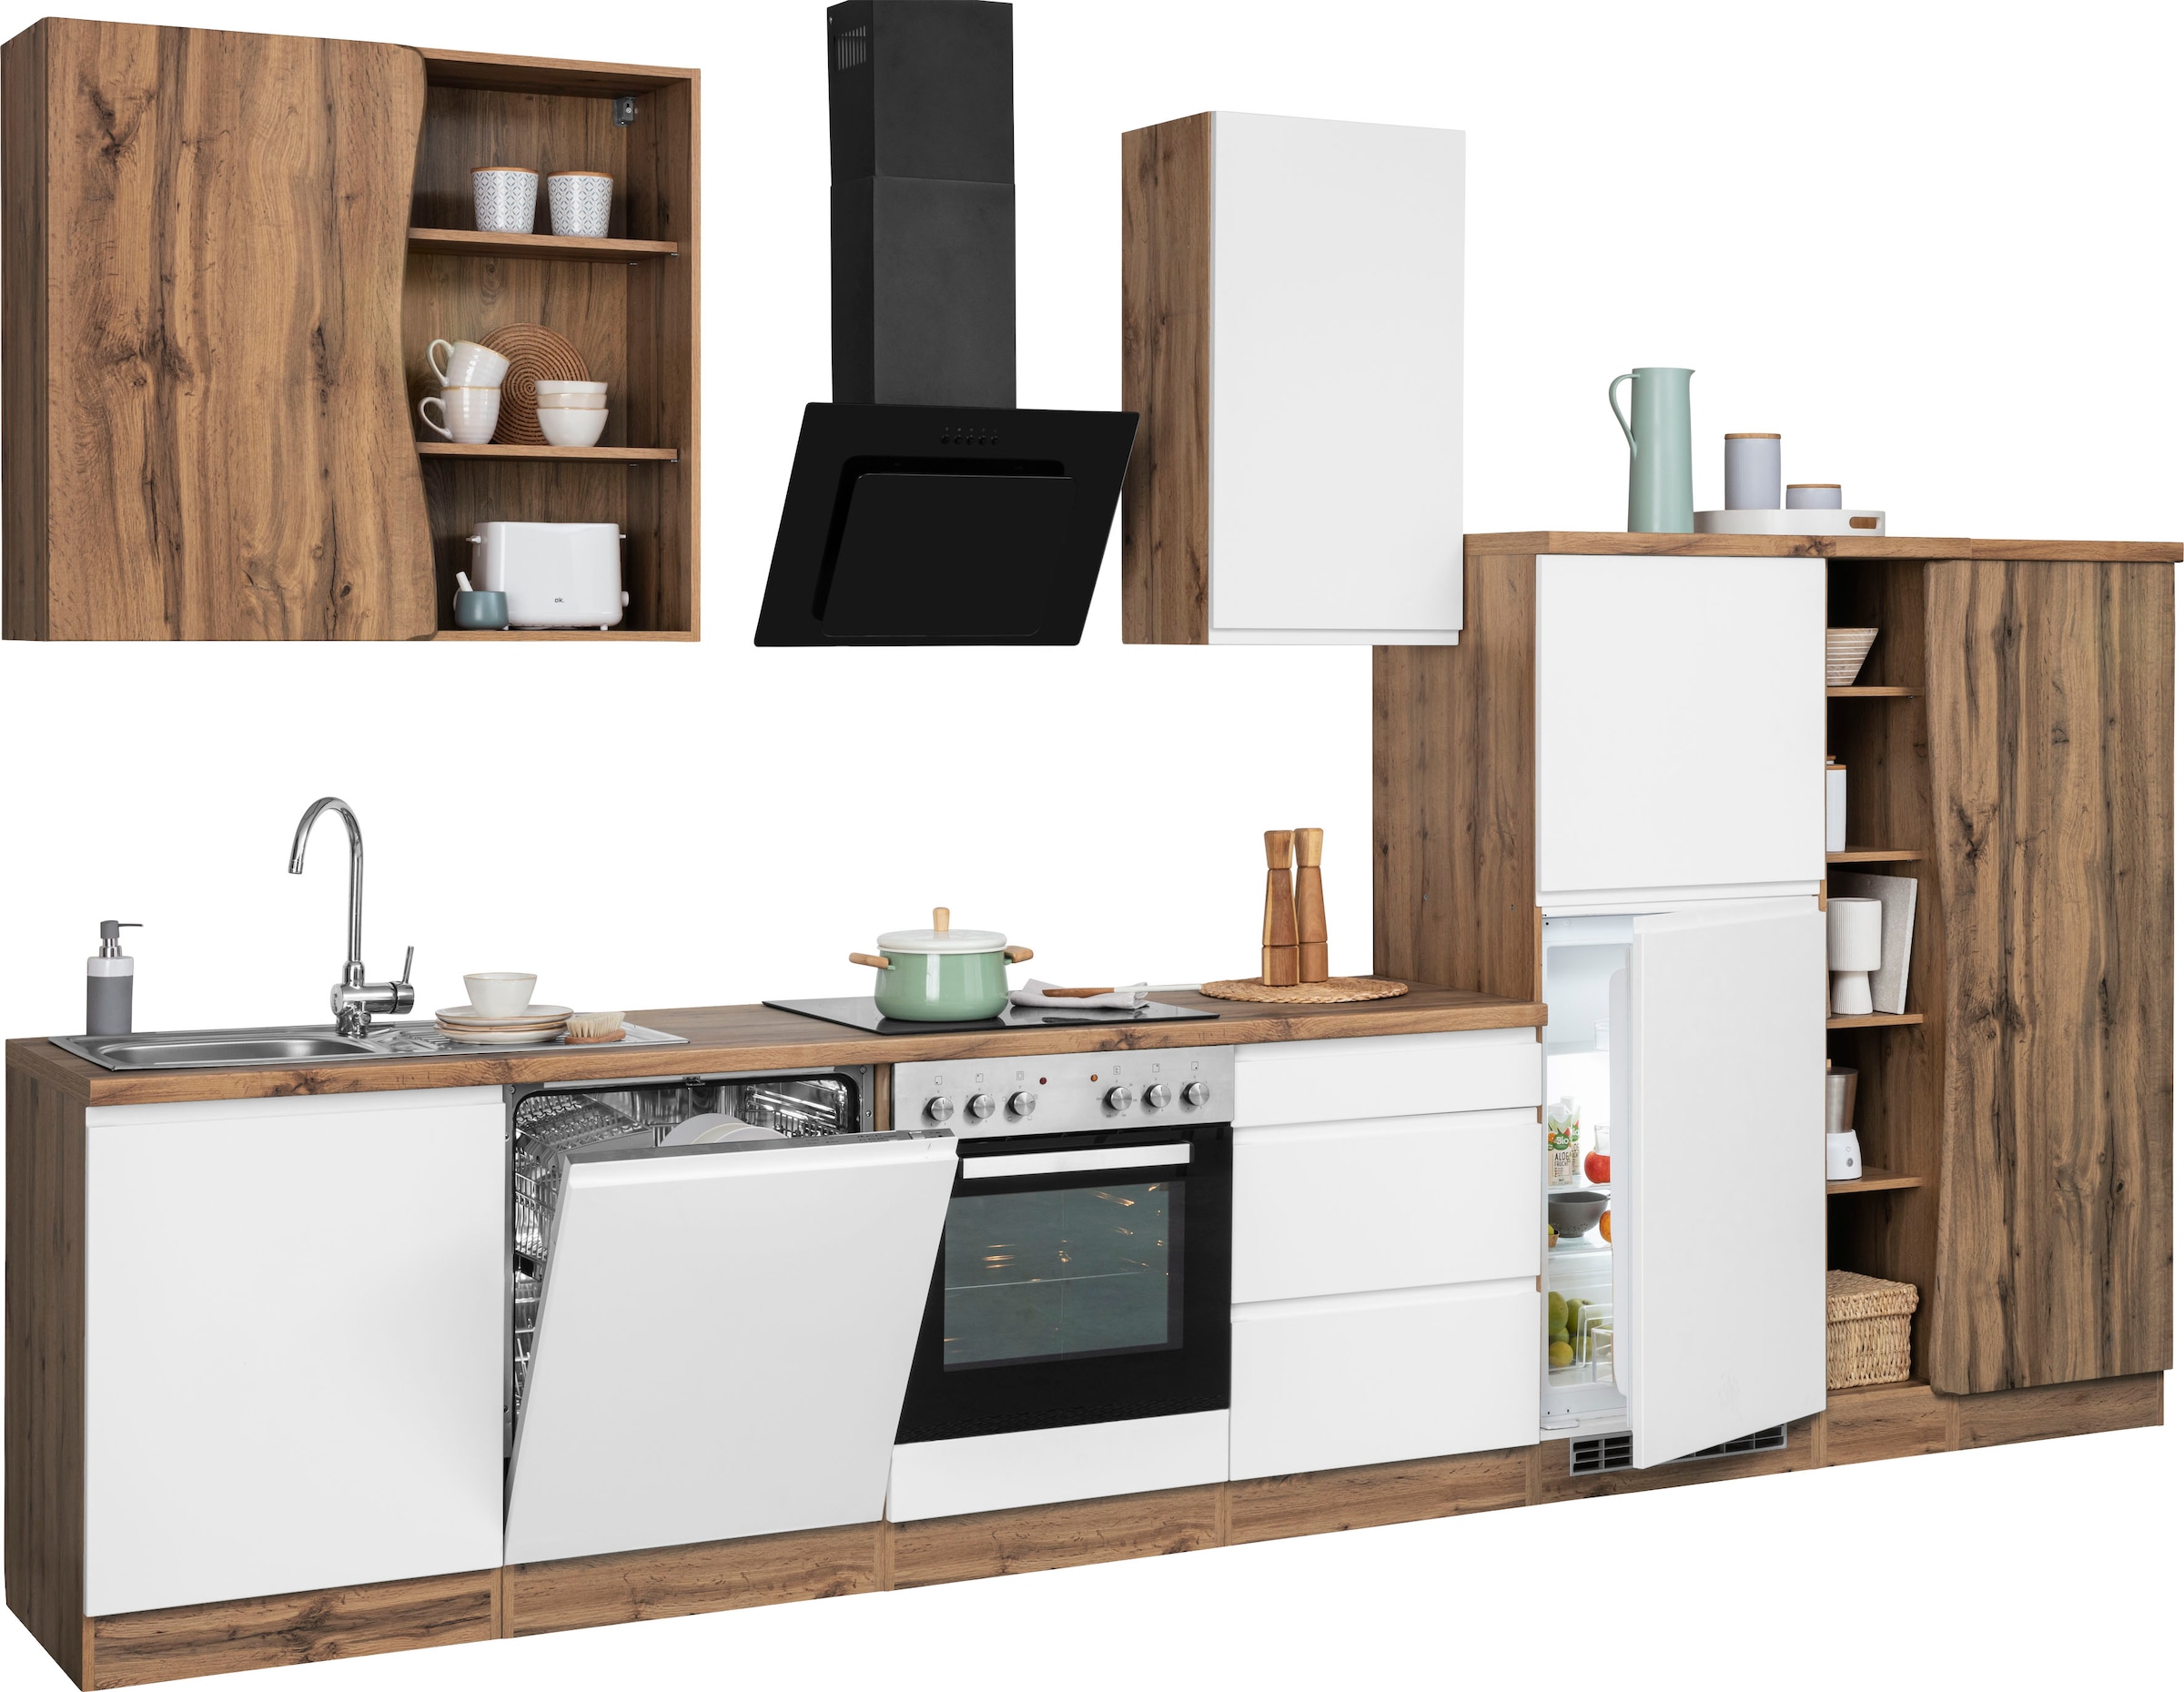 HELD MÖBEL Küche »Bruneck«, 380cm breit, wahlweise mit oder ohne E-Geräte,  hochwertige MDF-Fronten auf Raten kaufen